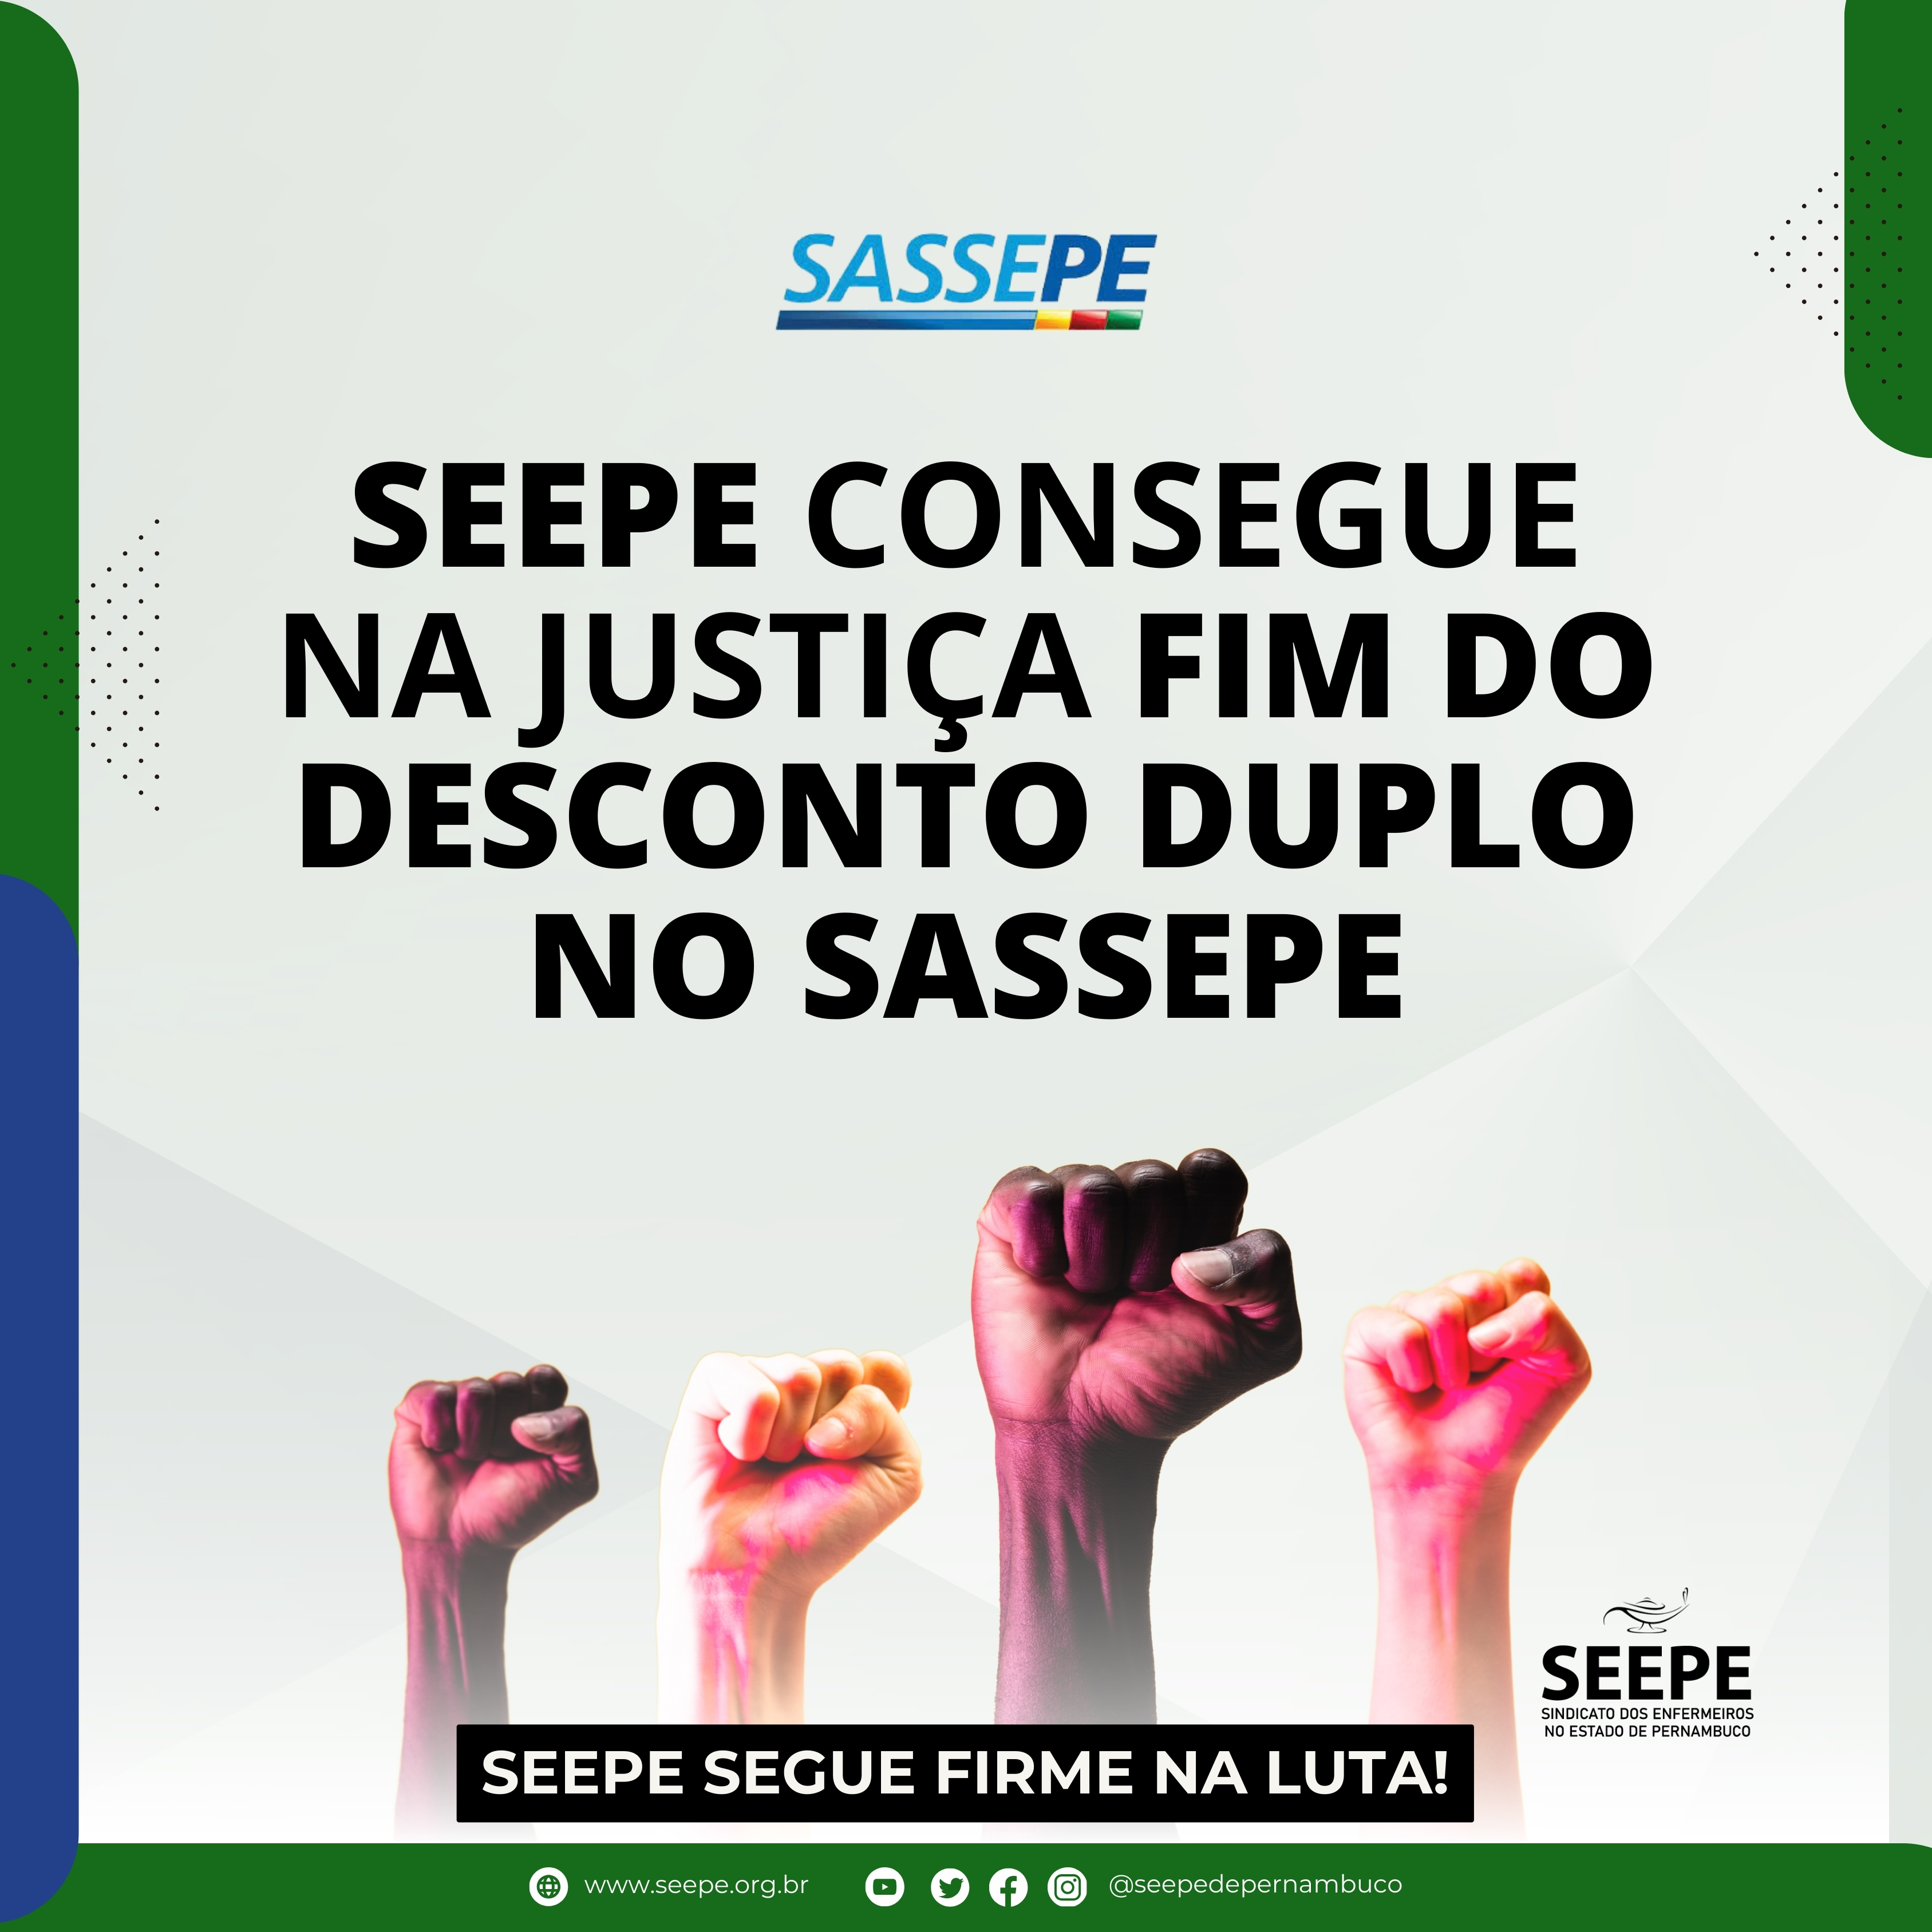 Seepe consegue na justiça fim do desconto duplo no SASSEPE.